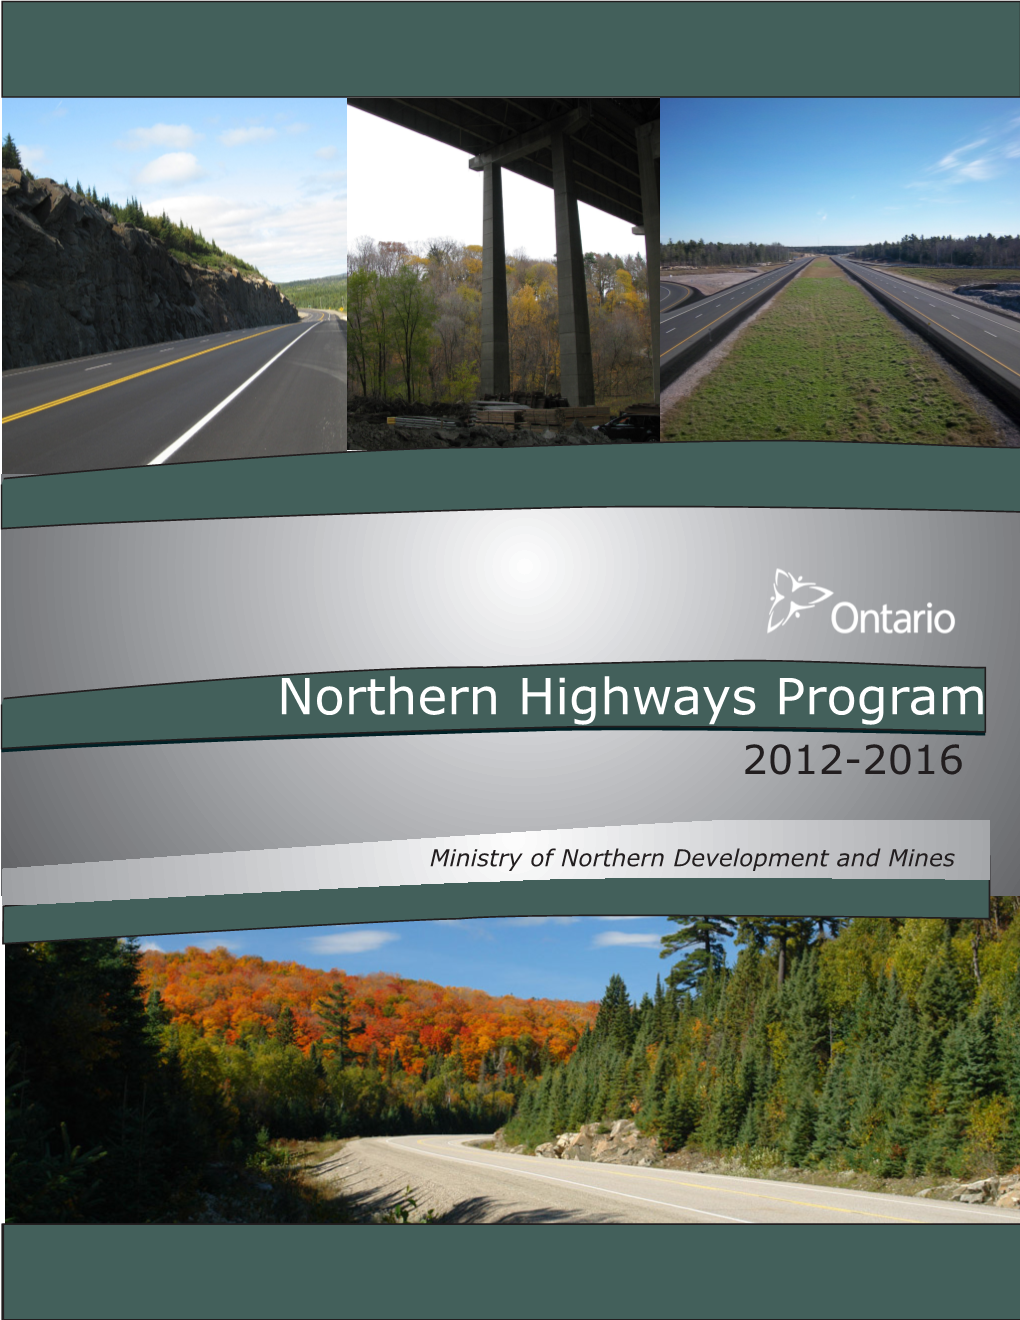 Northern Highways Program 2012-2016